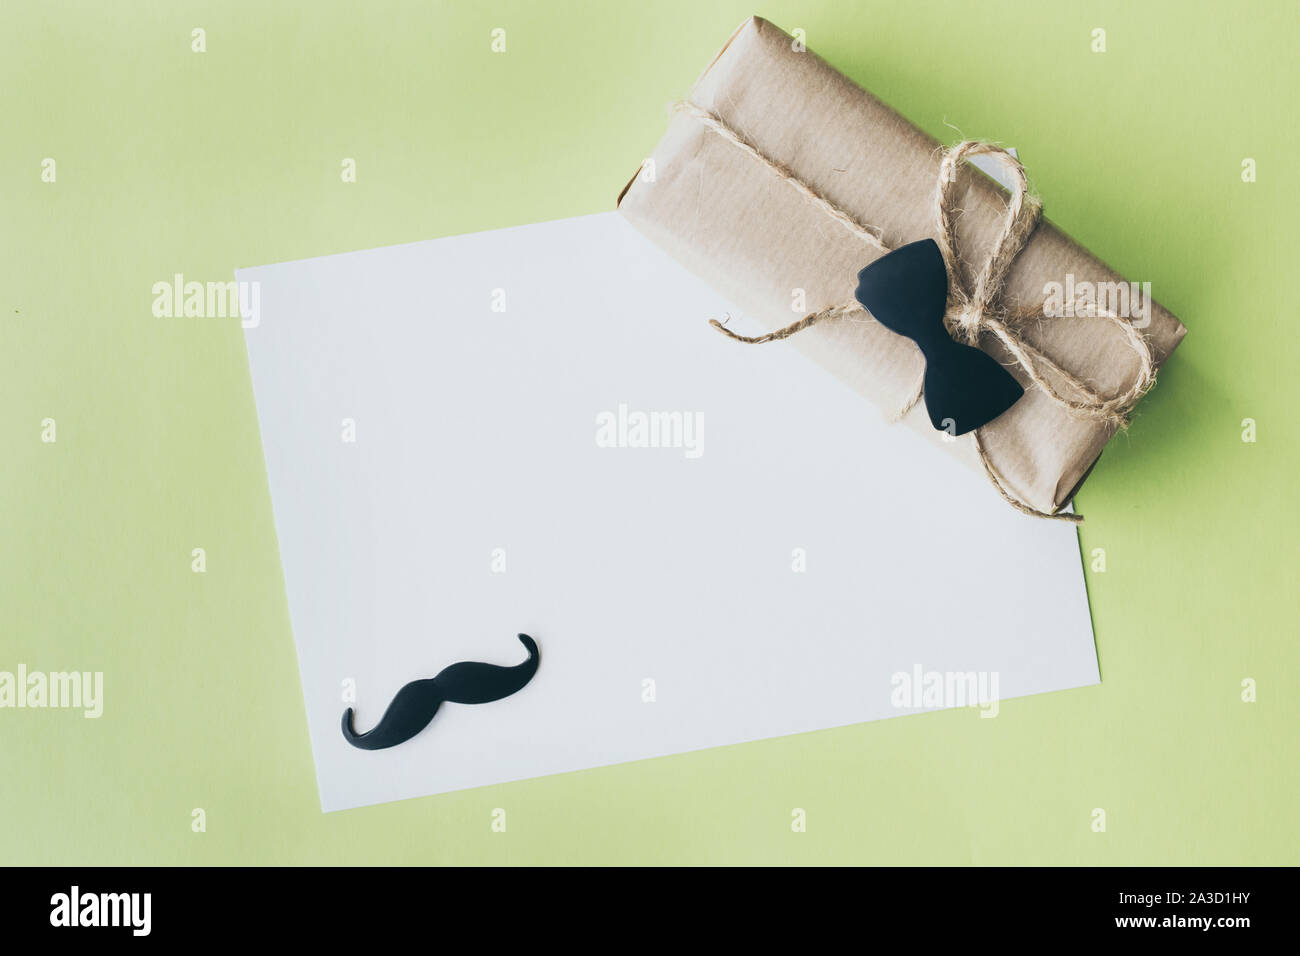 La festa del papà. Pacchetto regalo avvolto con della carta e corda con un fiocco decorativo tie-in su sfondo verde. Copyspace Foto Stock